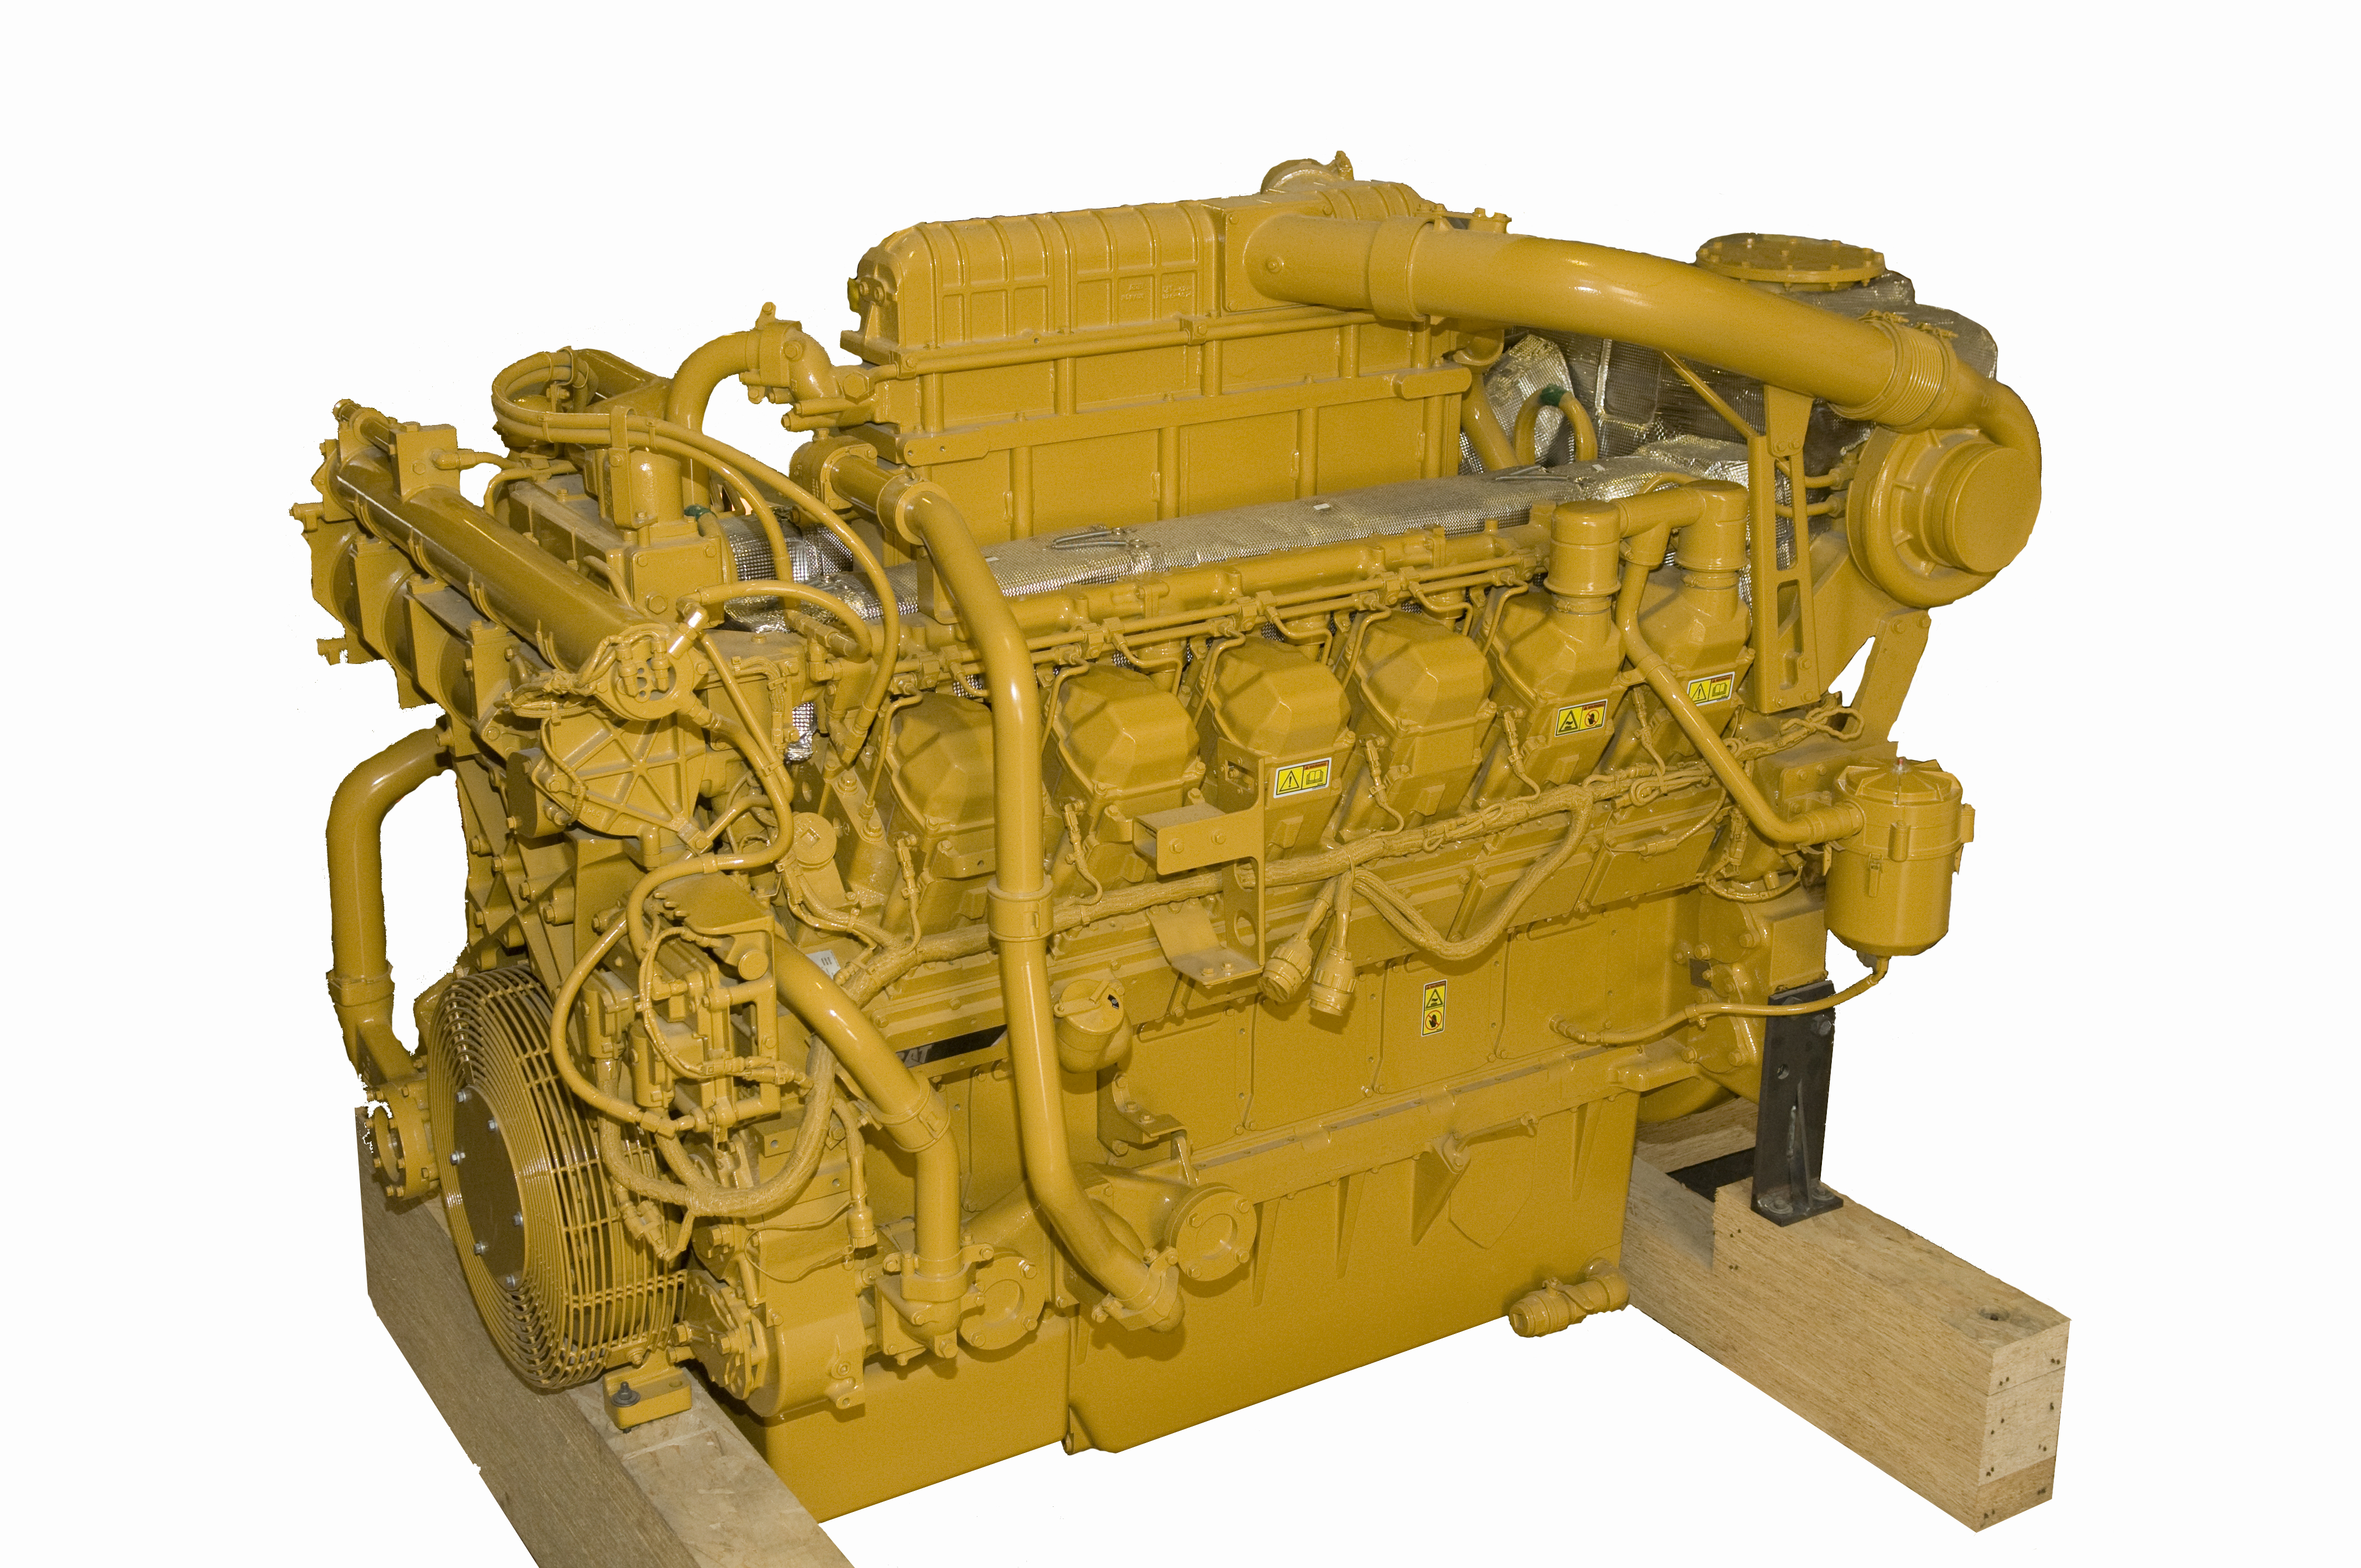  Rail Engine 3512C